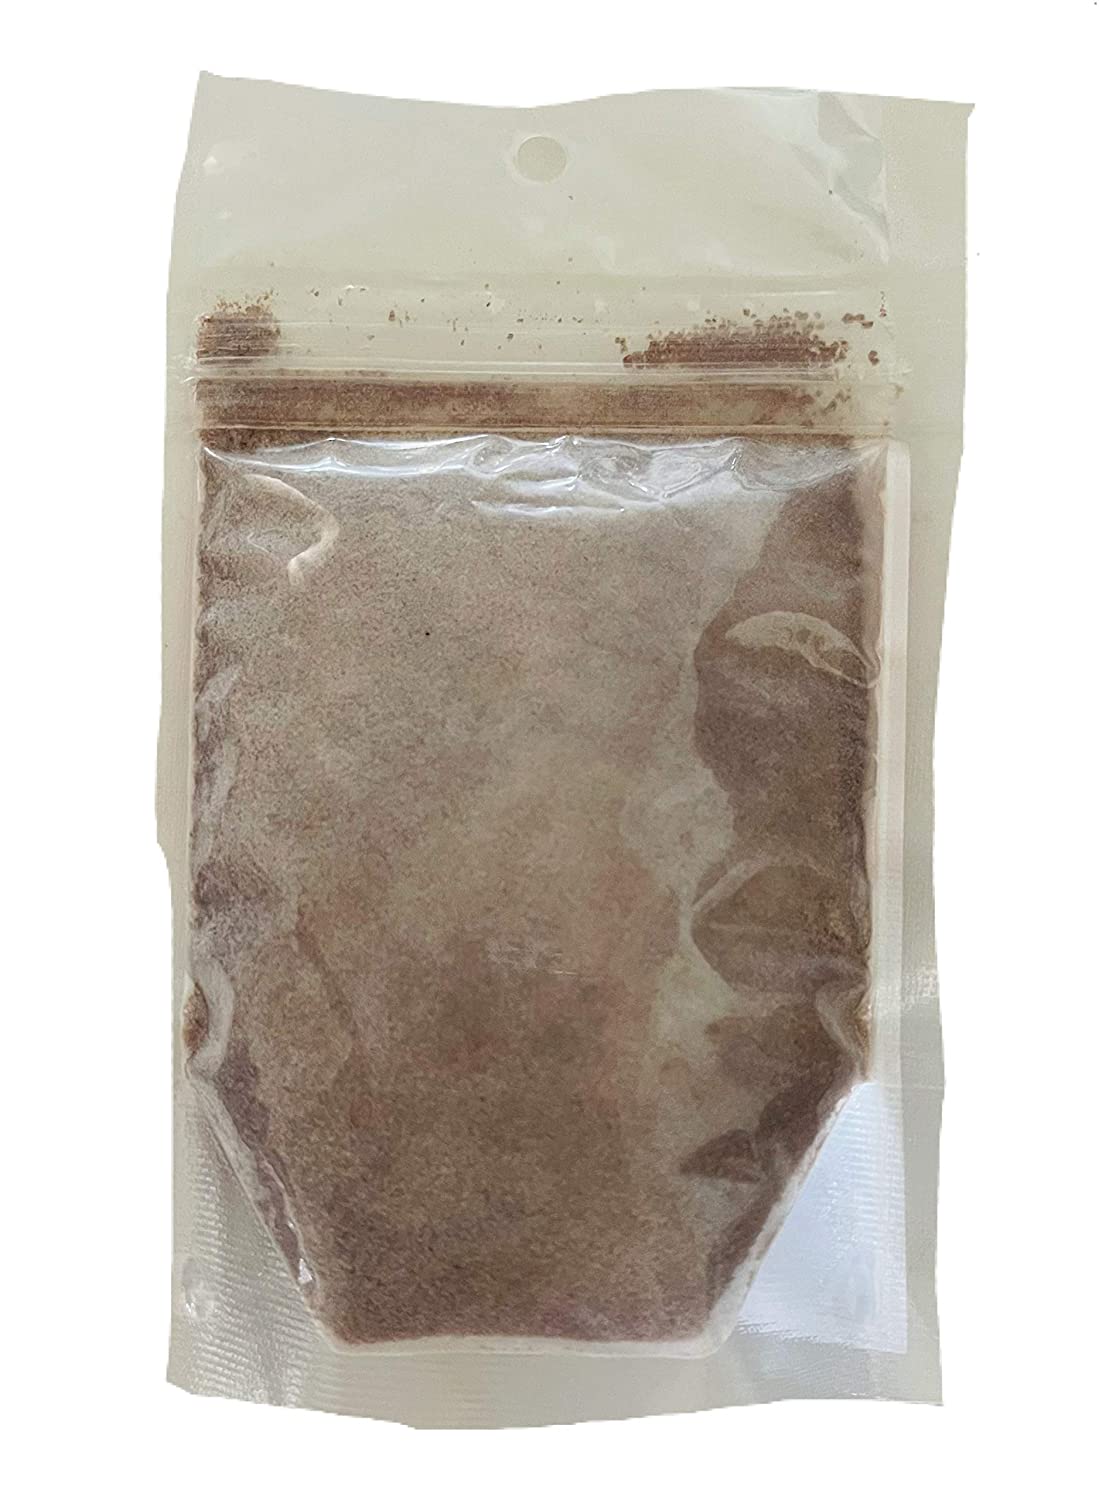 Hawaiian Poi Powder 3oz - Made in Hawaii From Hawaiian Taro